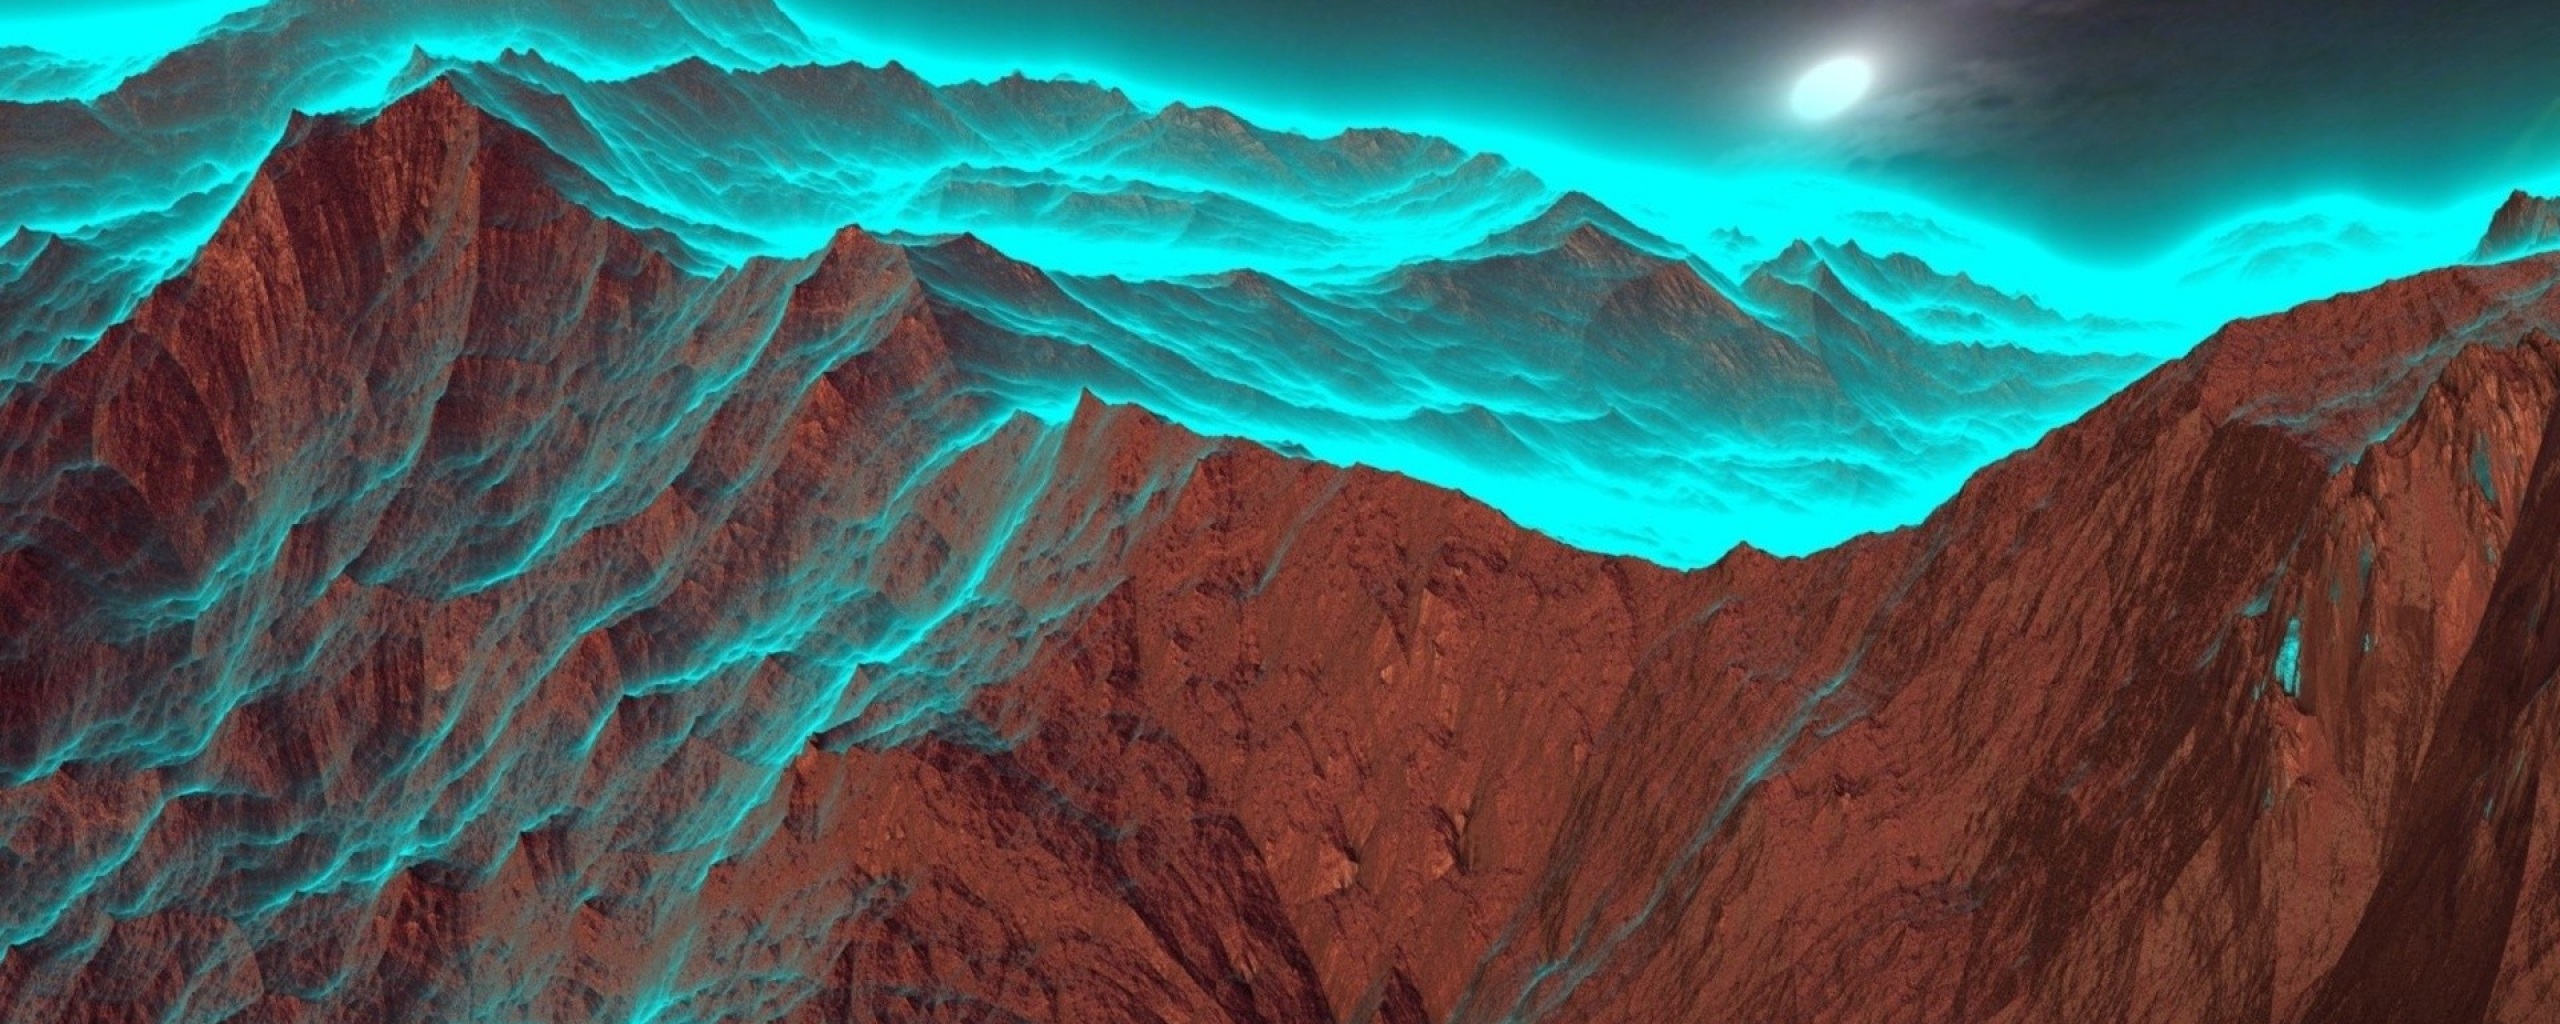 Mountain Top Landscape Dreamy Fantasy 4k Wallpaper 4K